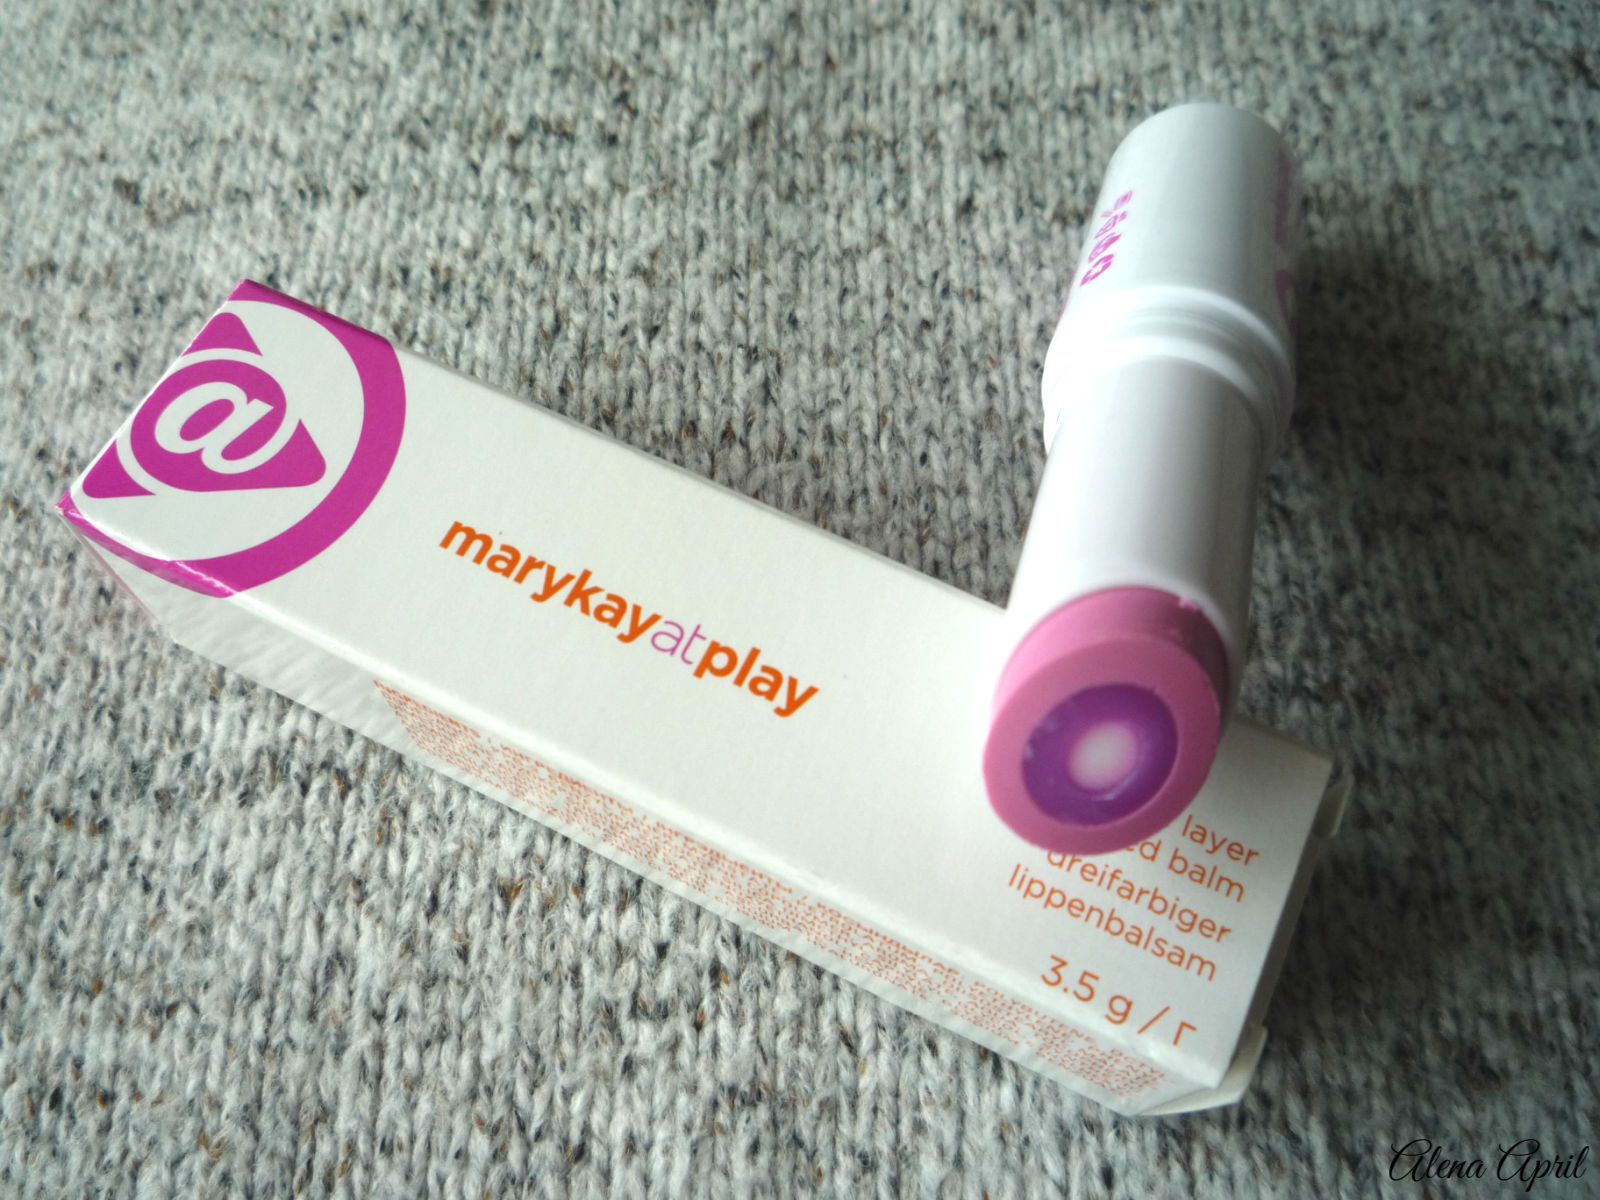 Цветной бальзам для губ 3 в 1 marykayatplay™, Розовые грезы, Pink Again, Mary Kay